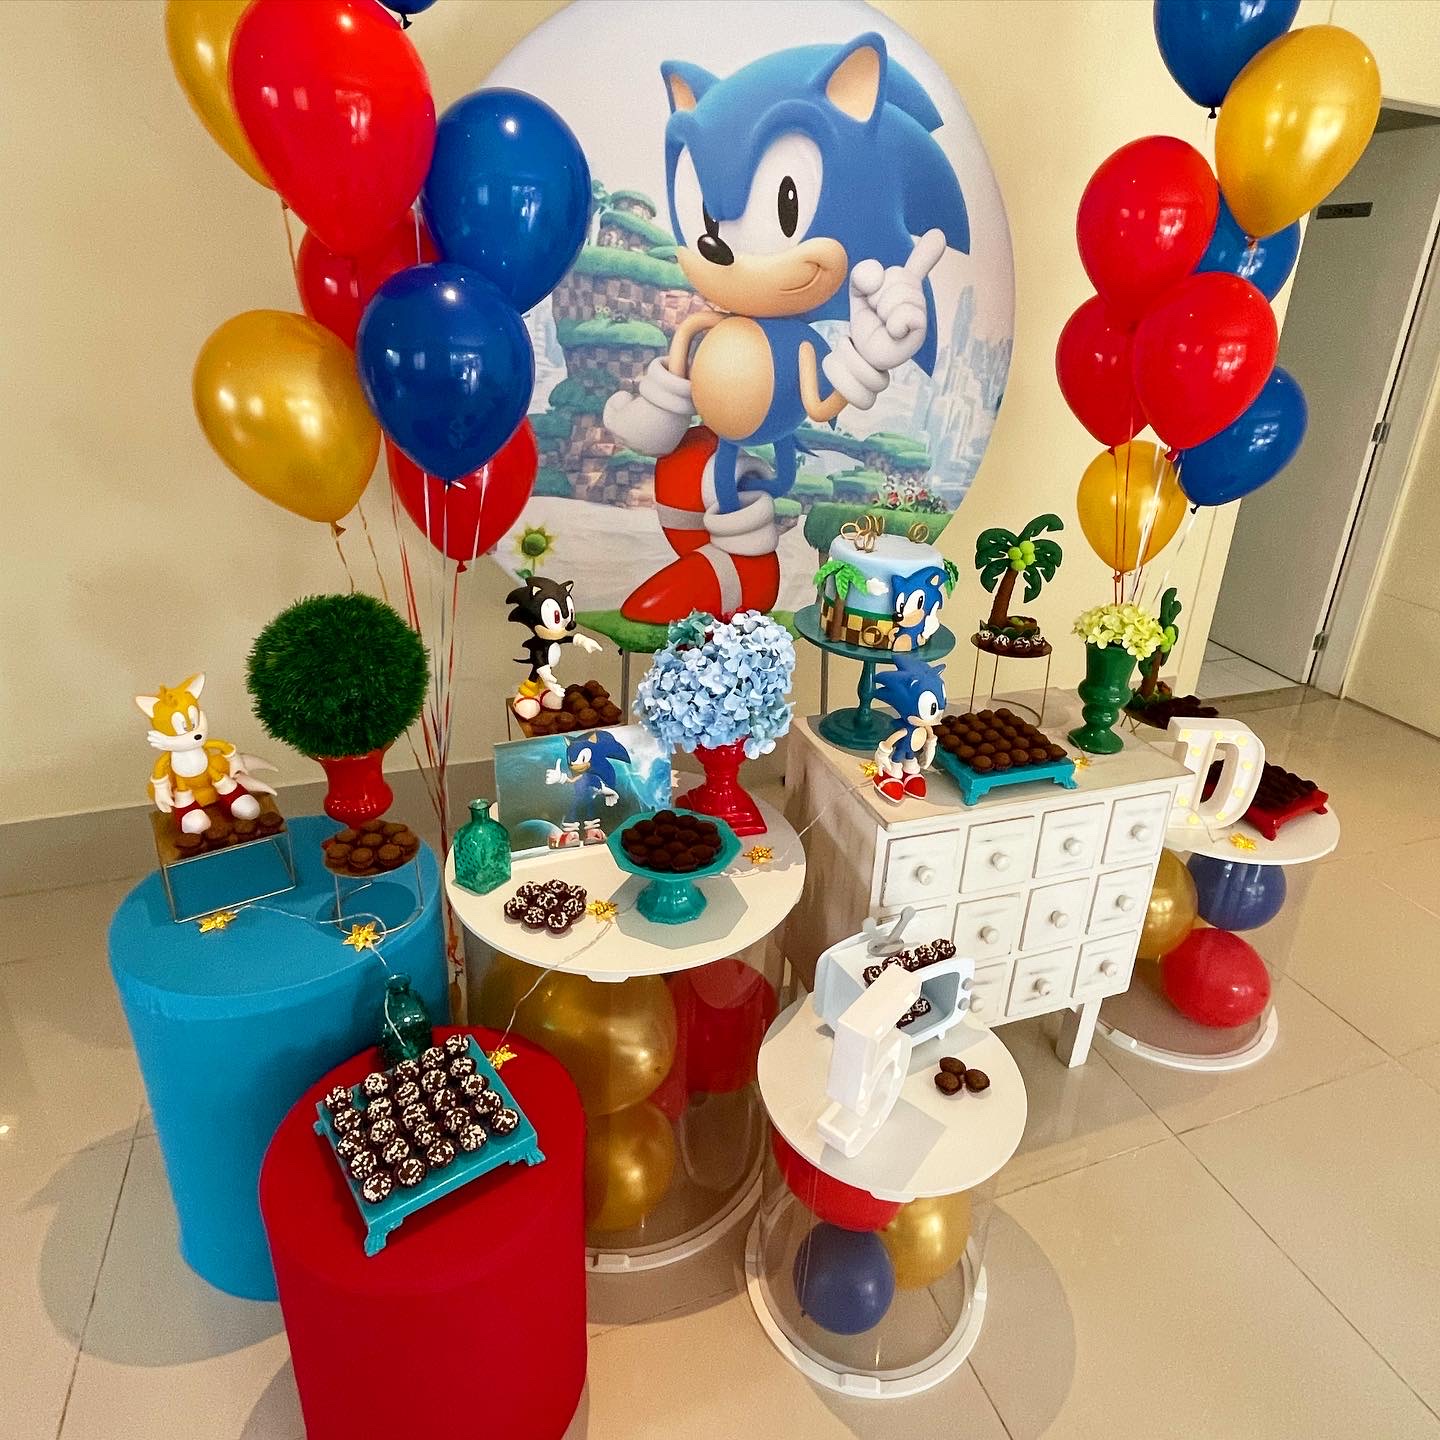 Festa Sonic